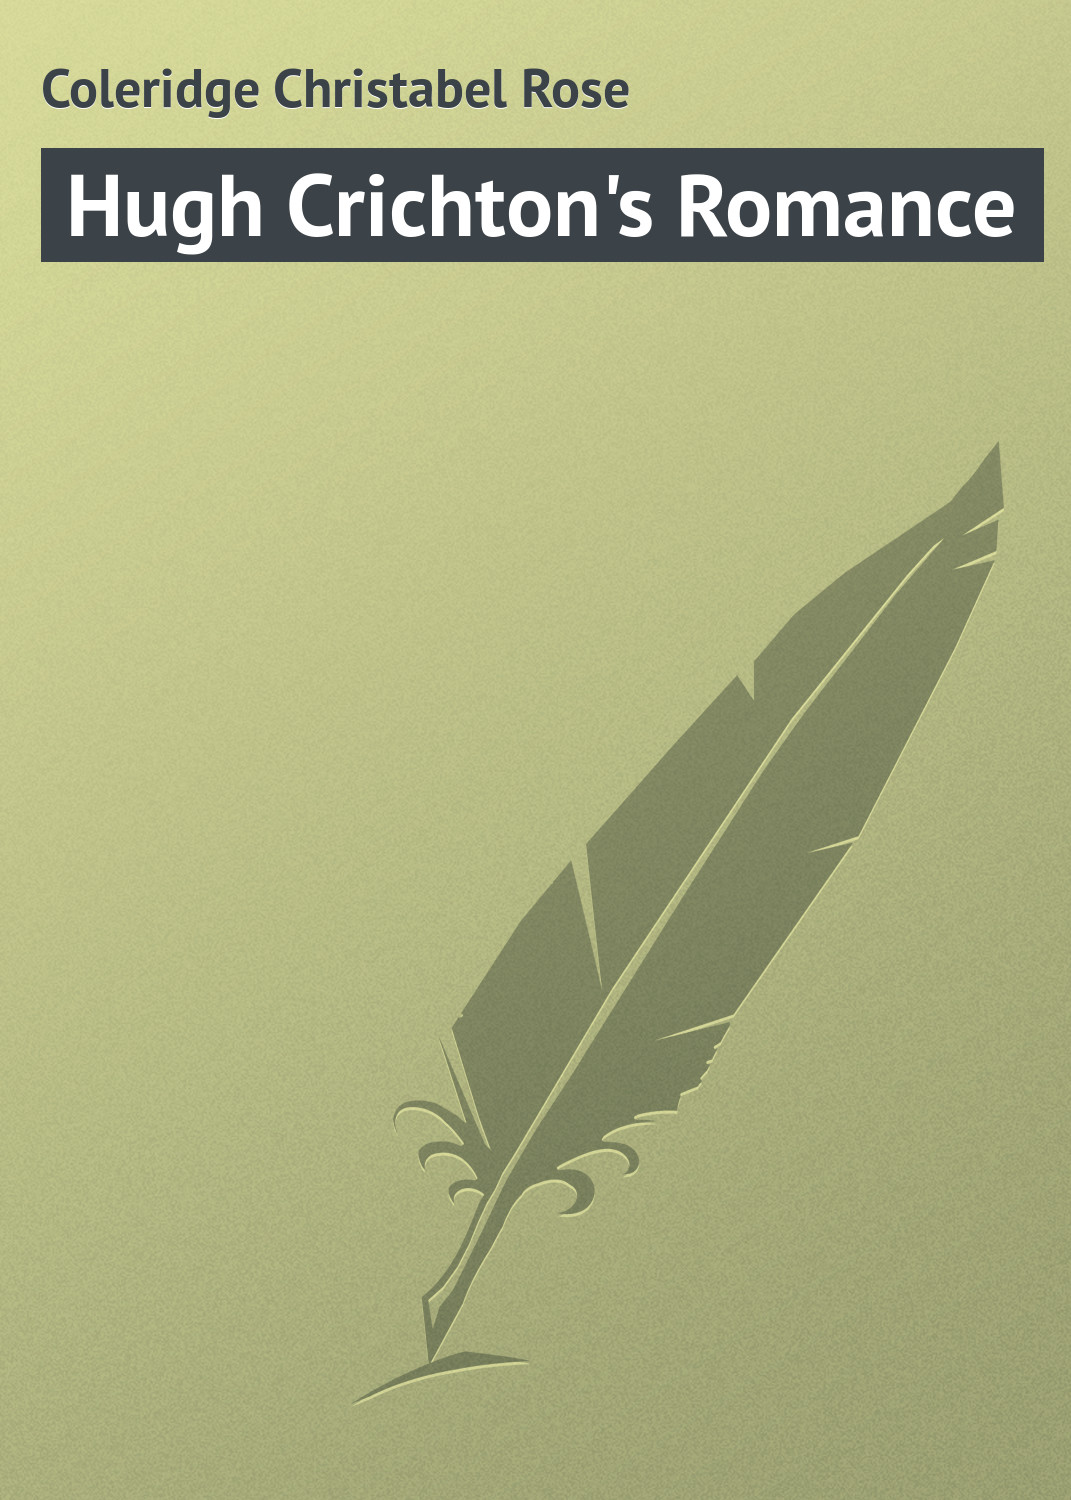 Книга Hugh Crichton's Romance из серии , созданная Christabel Coleridge, может относится к жанру Зарубежная классика. Стоимость электронной книги Hugh Crichton's Romance с идентификатором 23155075 составляет 5.99 руб.